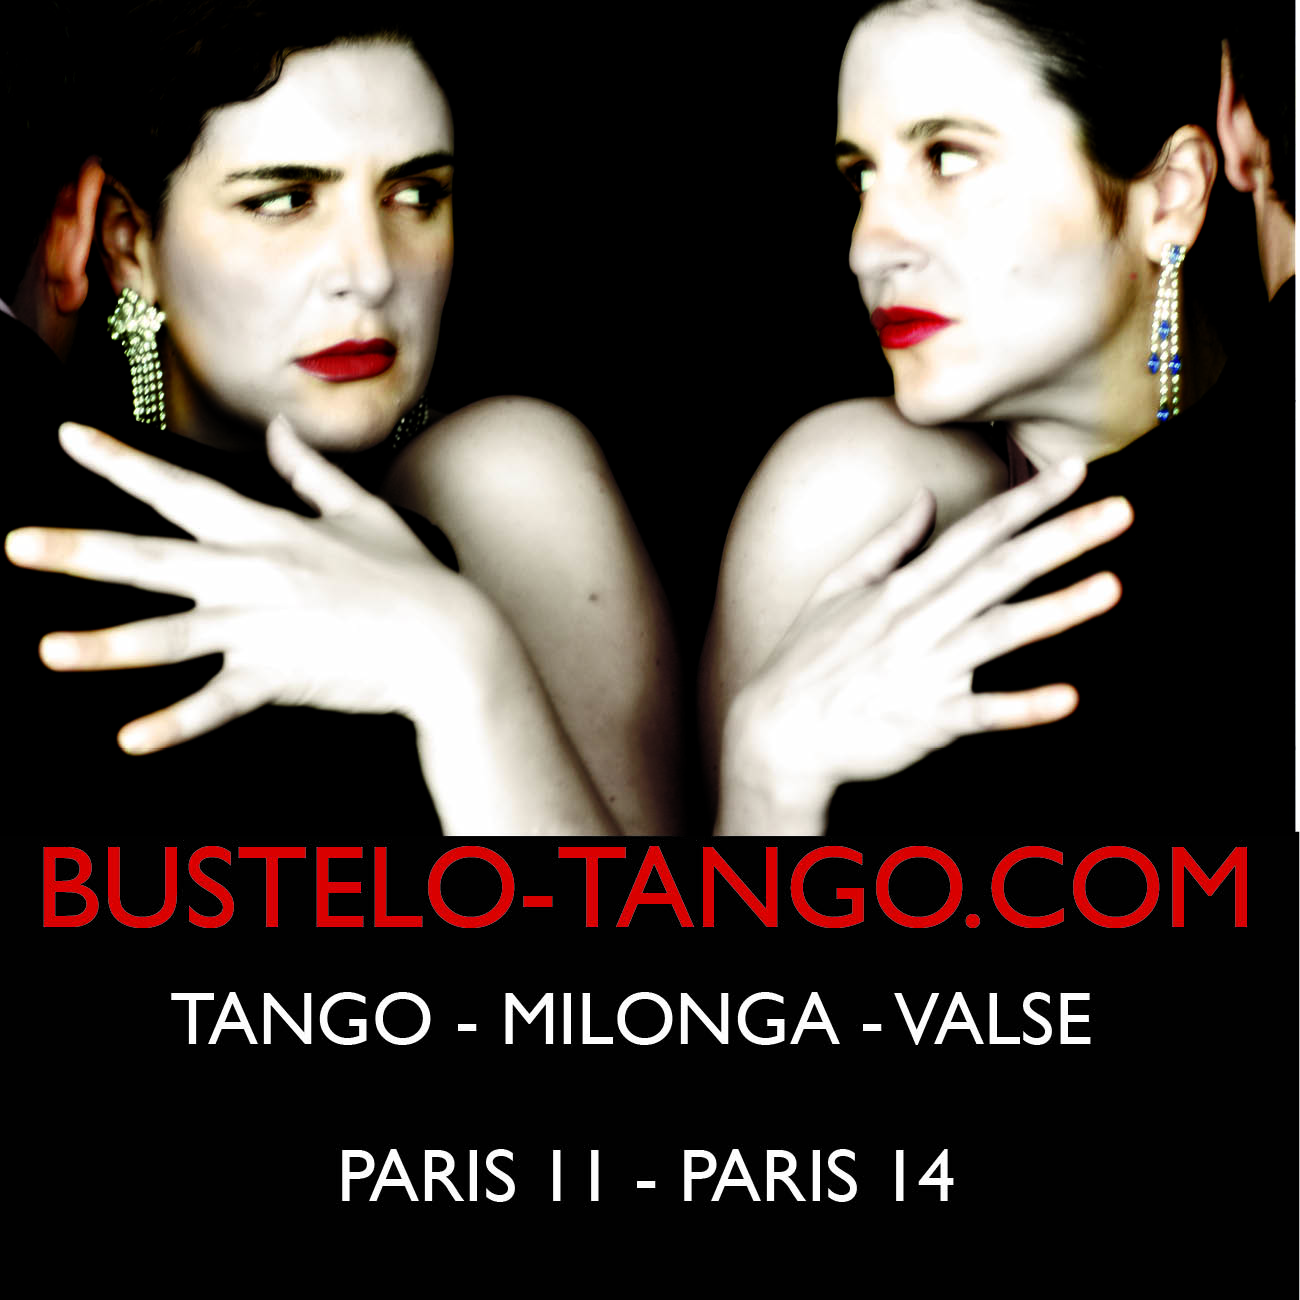 Apprendre à danser le tango, Tango Argentin à Paris, Tango, Milonga, Valse argentine, cours de tango argentin